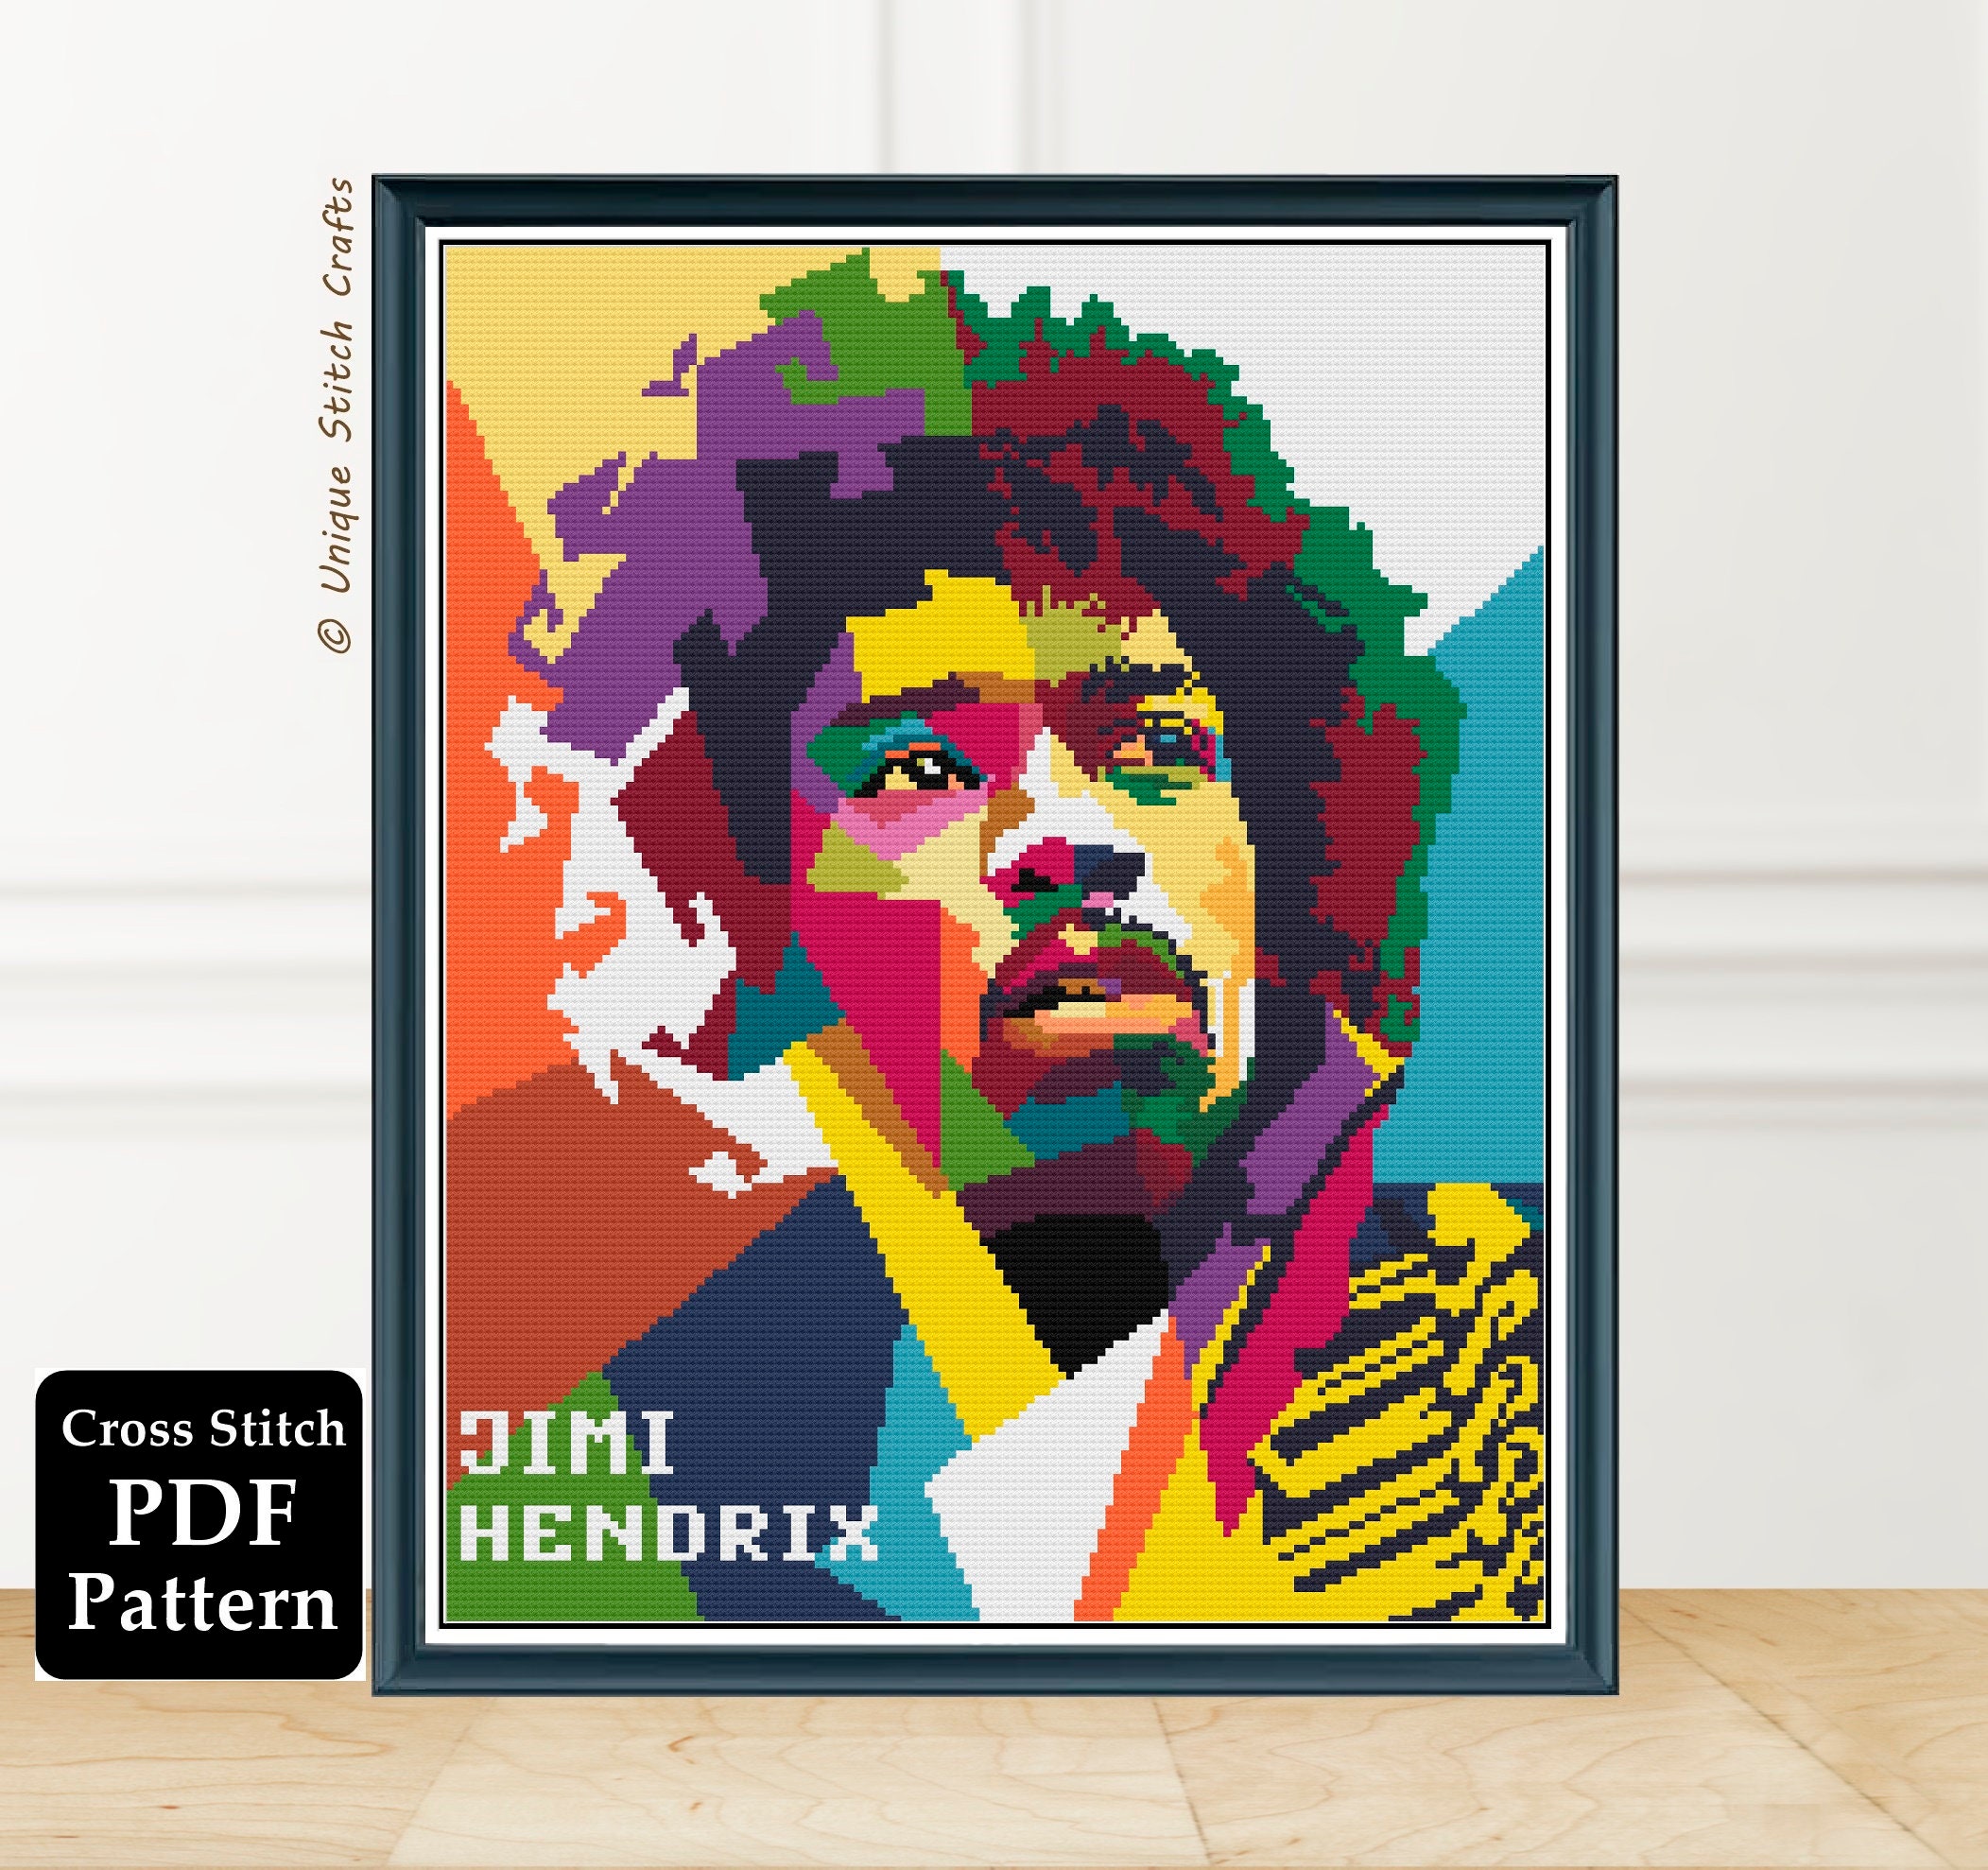 90 cm Jimi Hendrix Impresiones de arte en lienzo Famoso Pinturas Pop Art de Rock Pop en la pared Resumen Jimi Hendrix Pictures Decoración de pared 60 